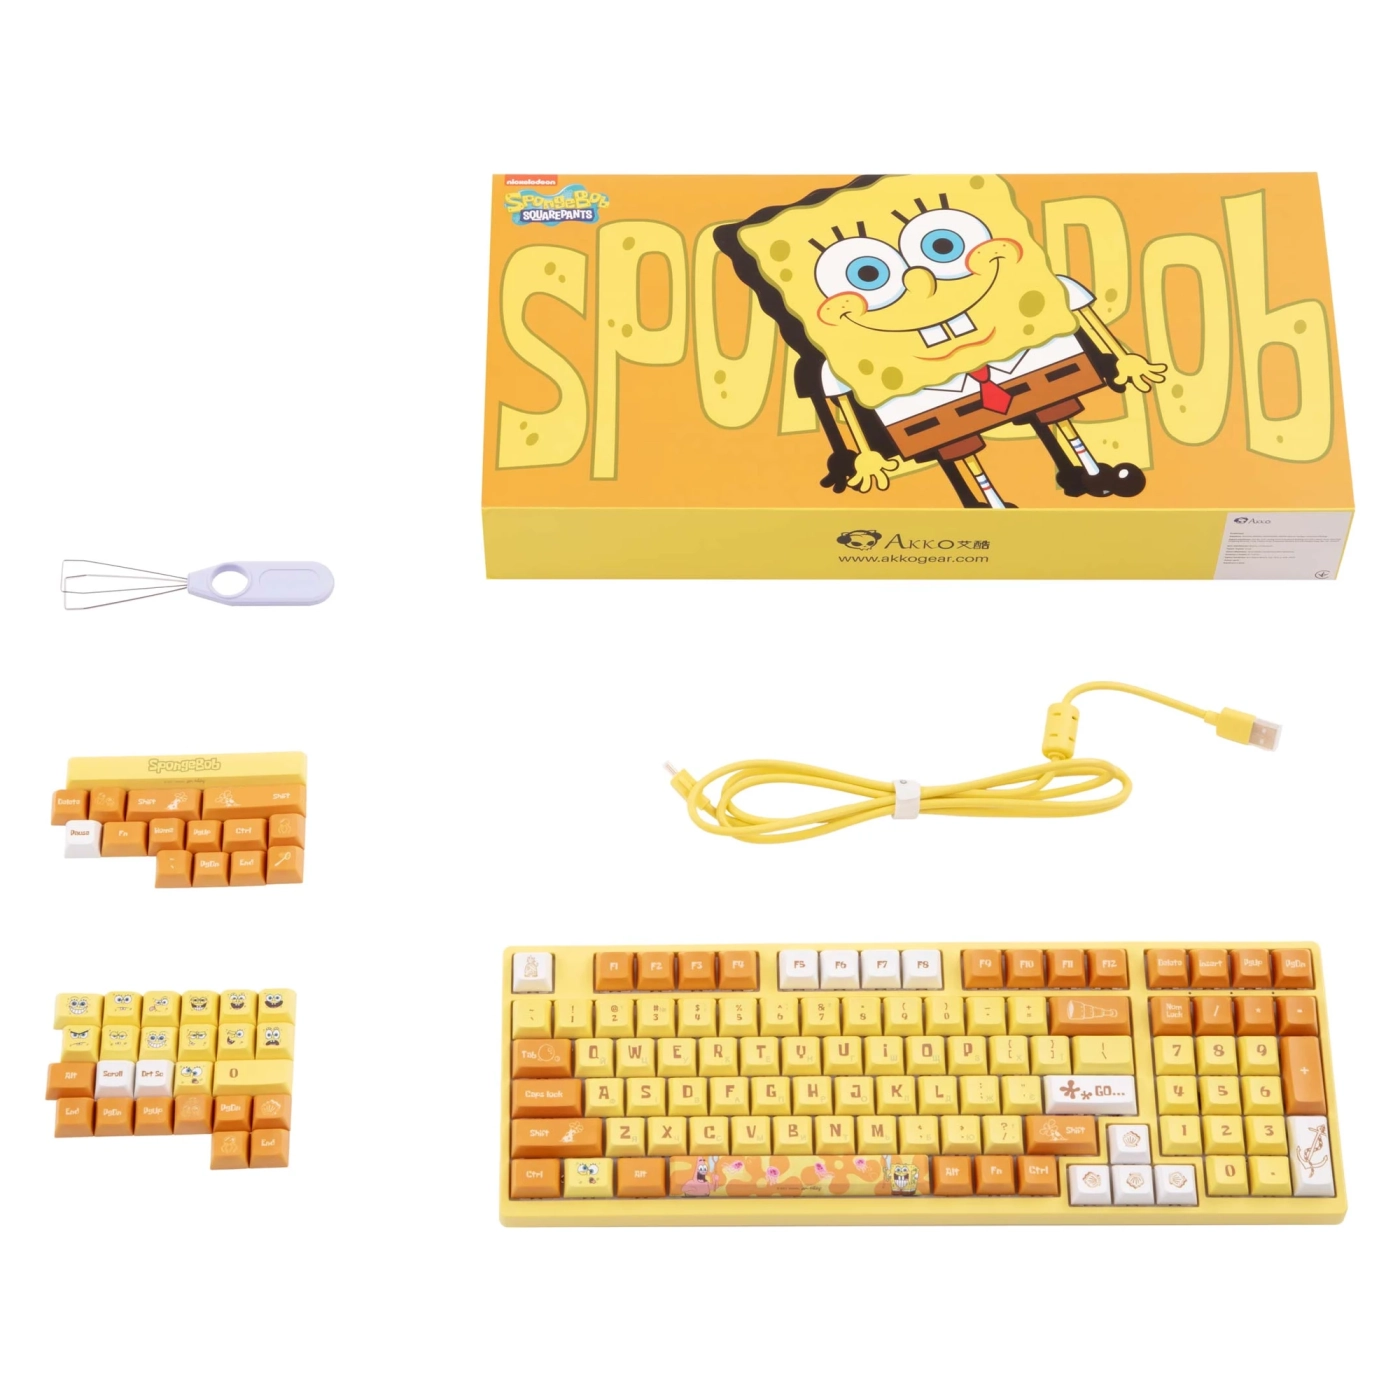 Купить Клавиатура Akko 3098S RGB Sponge Bob CS Starfish (6925758613897) - фото 10